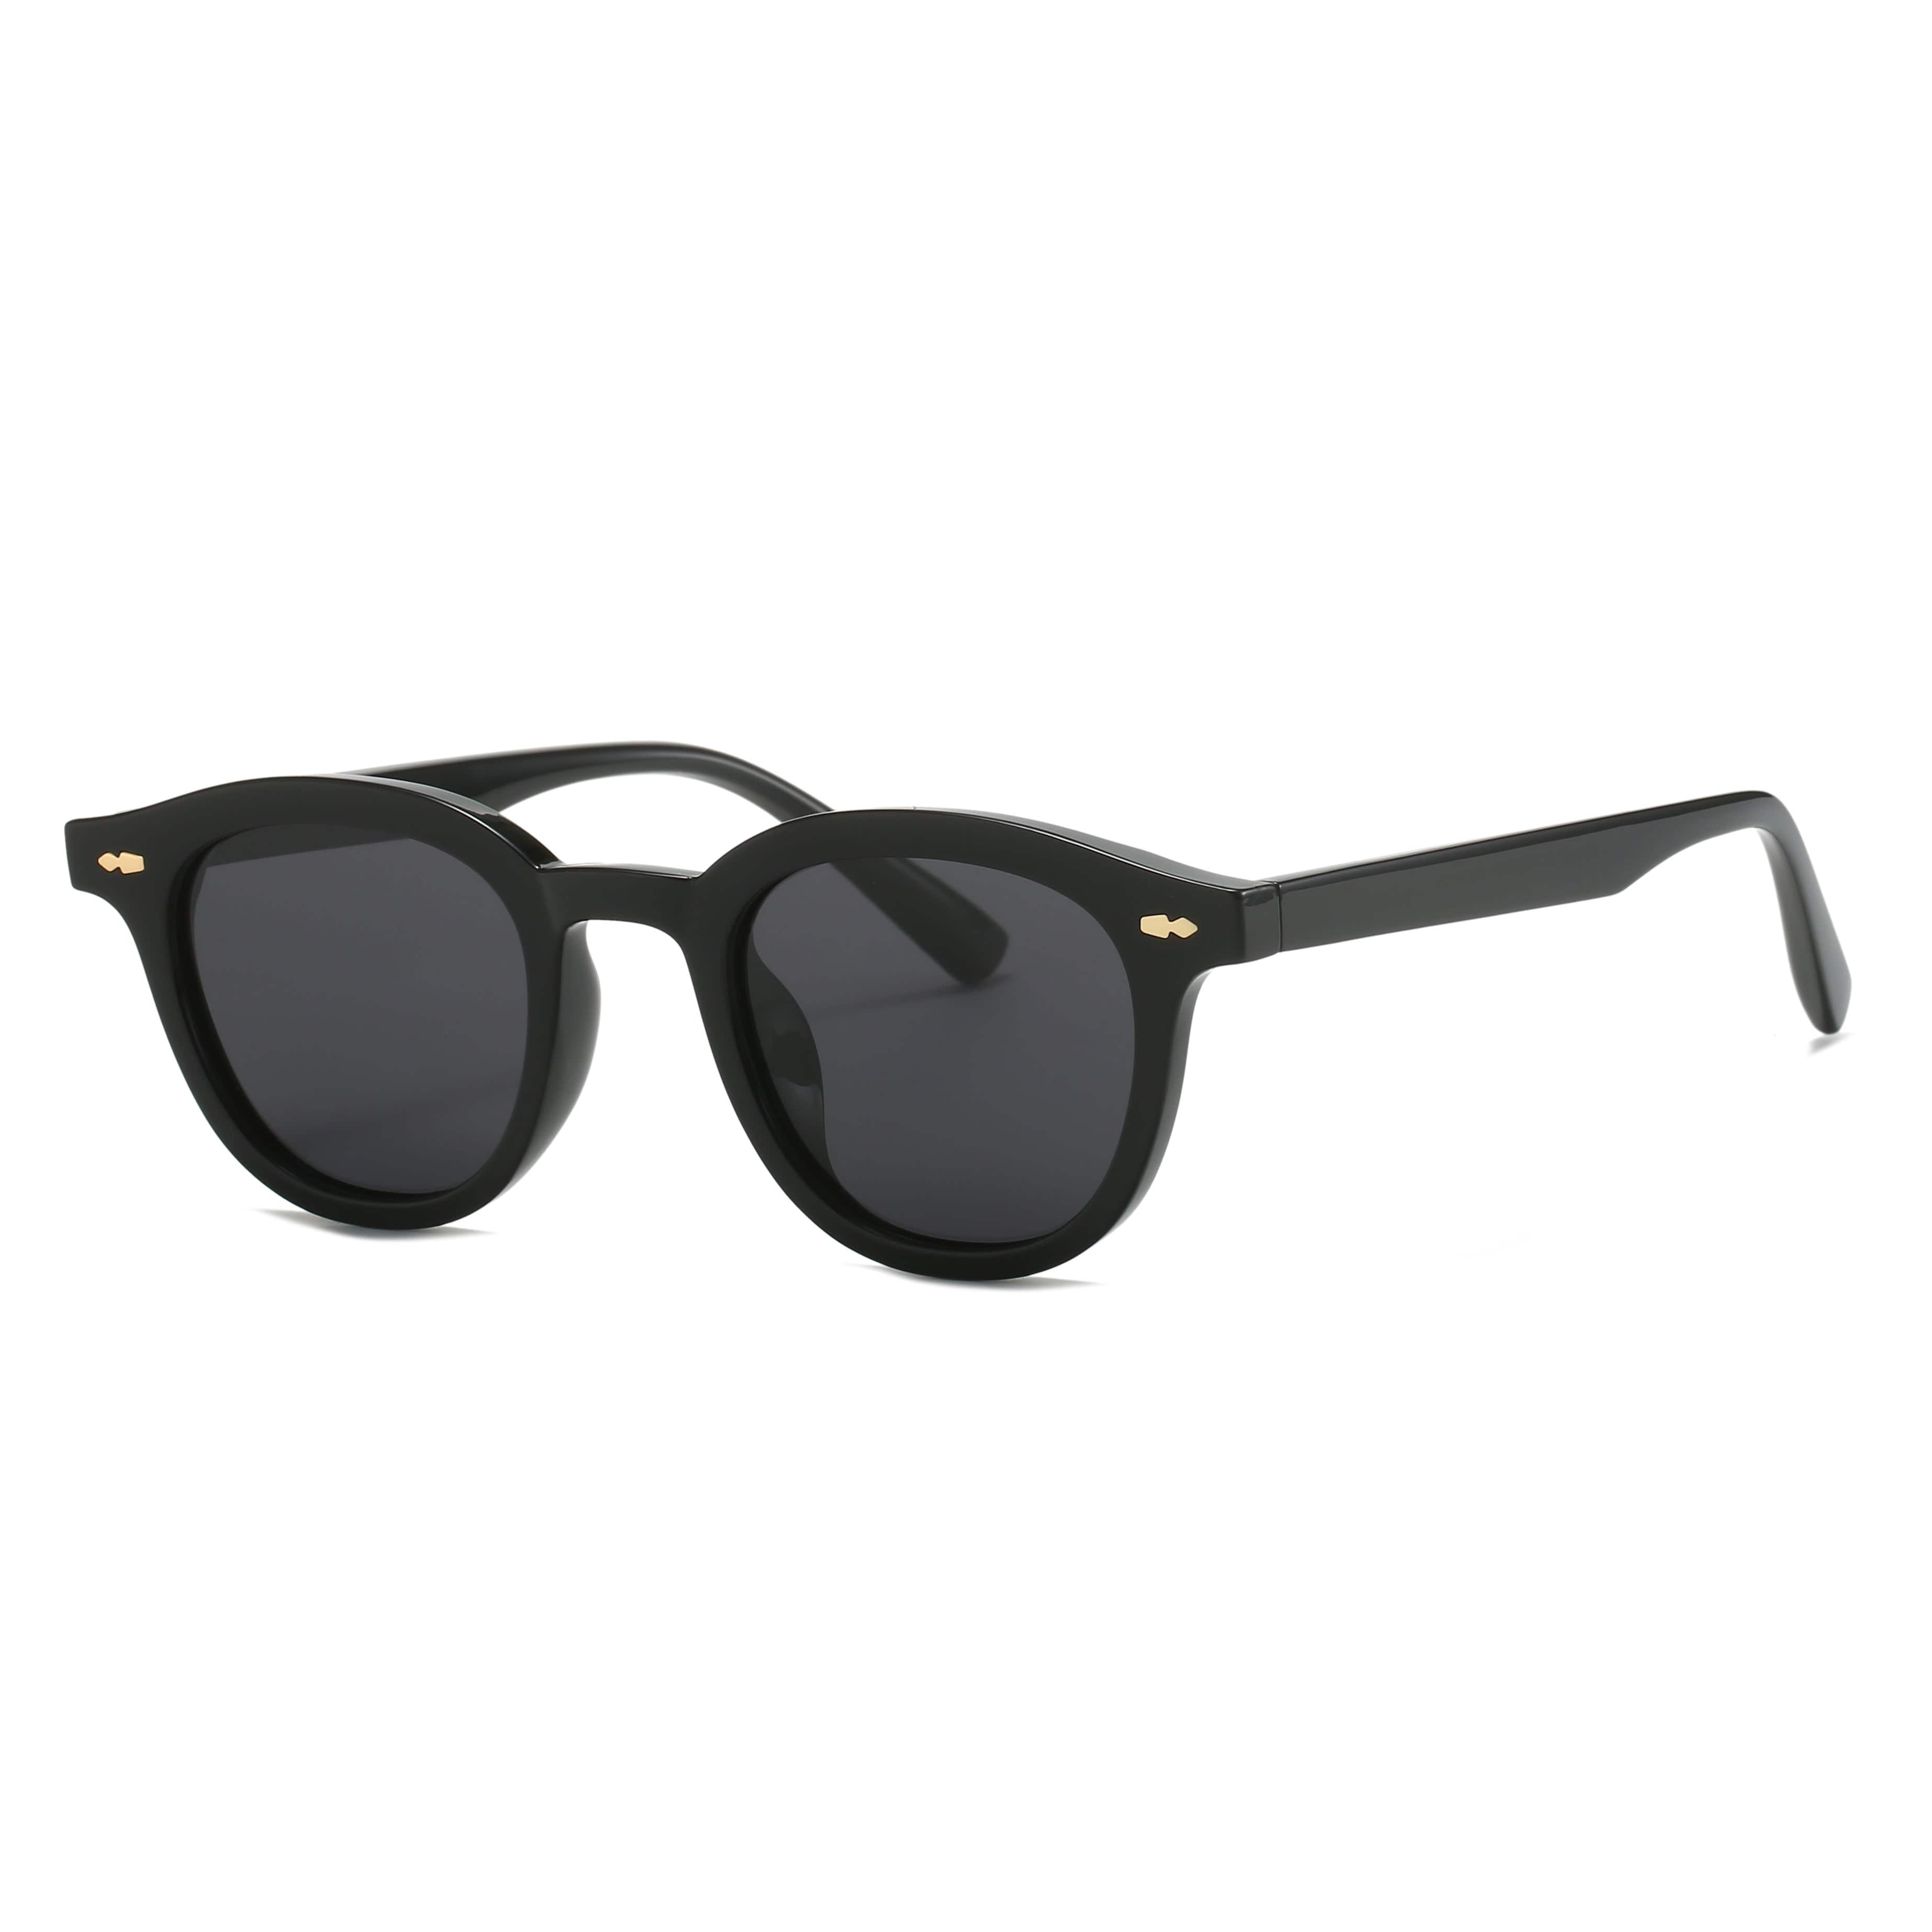 GIUSTIZIERI VECCHI Sunglasses Small / Black ChicCharmante Uno